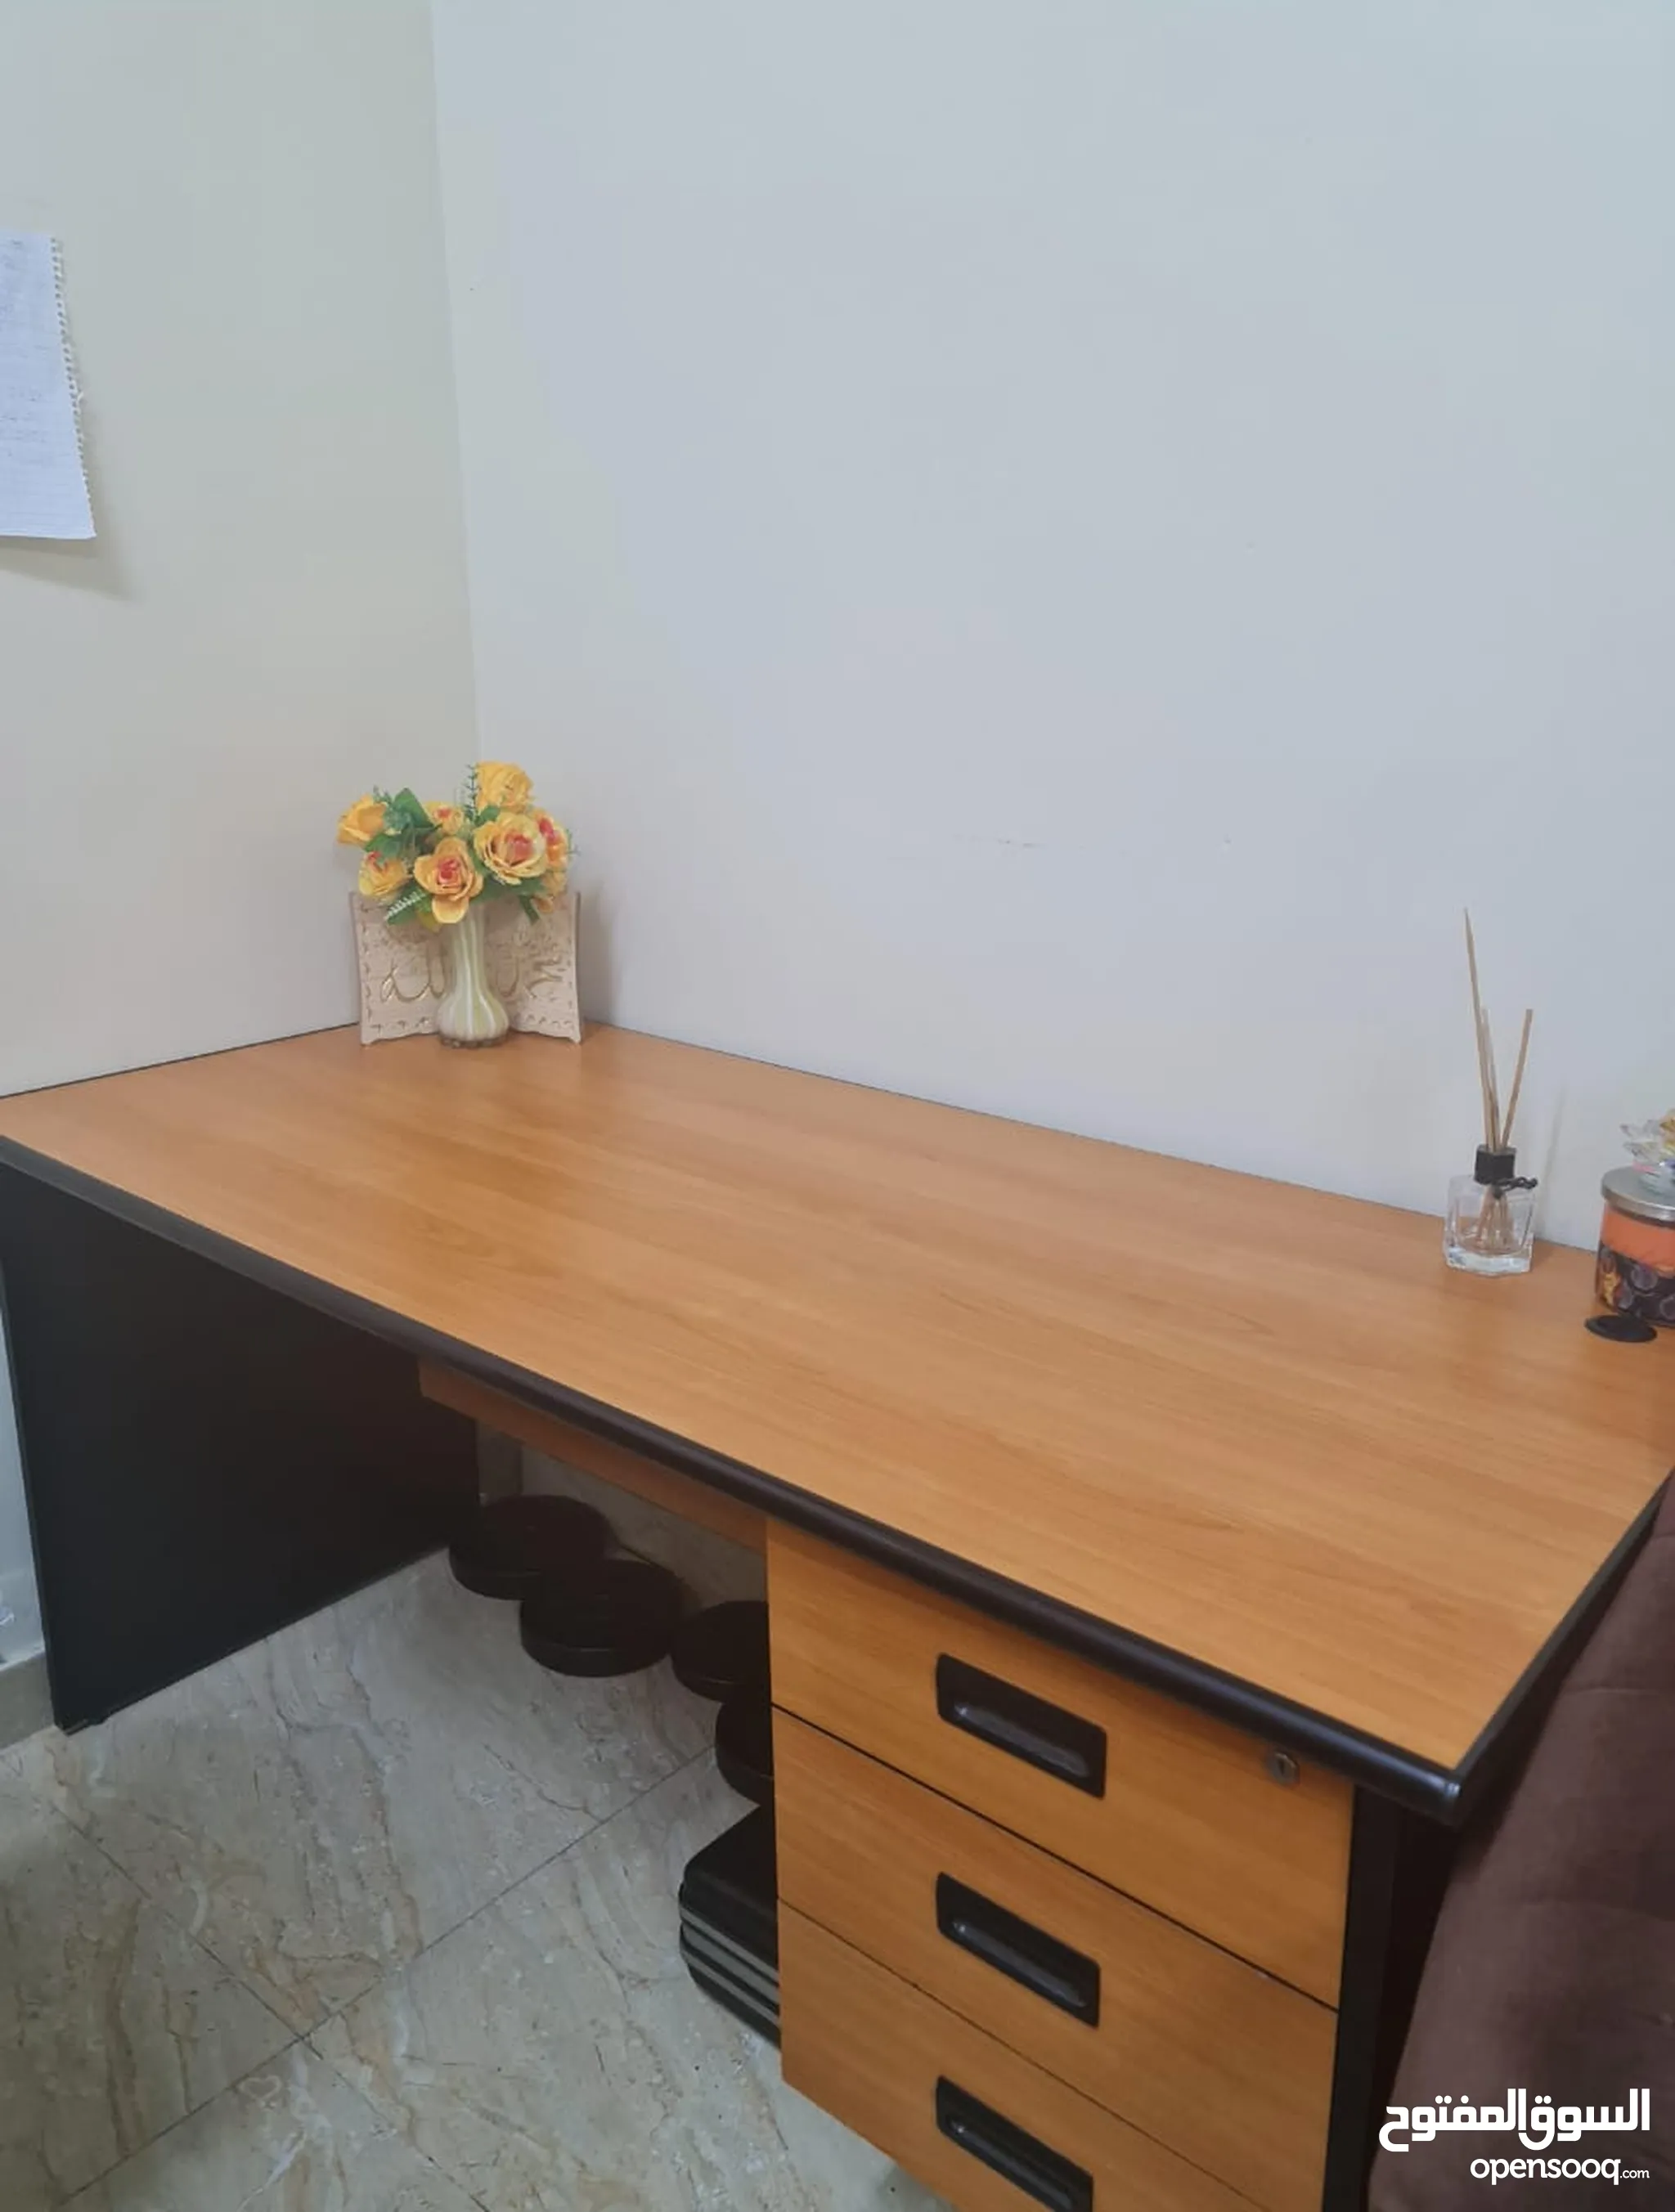 اثاث مكاتب للبيع : اثاث مكتبي : طاولات وكراسي : ارخص الاسعار في أبو ظبي |  السوق المفتوح